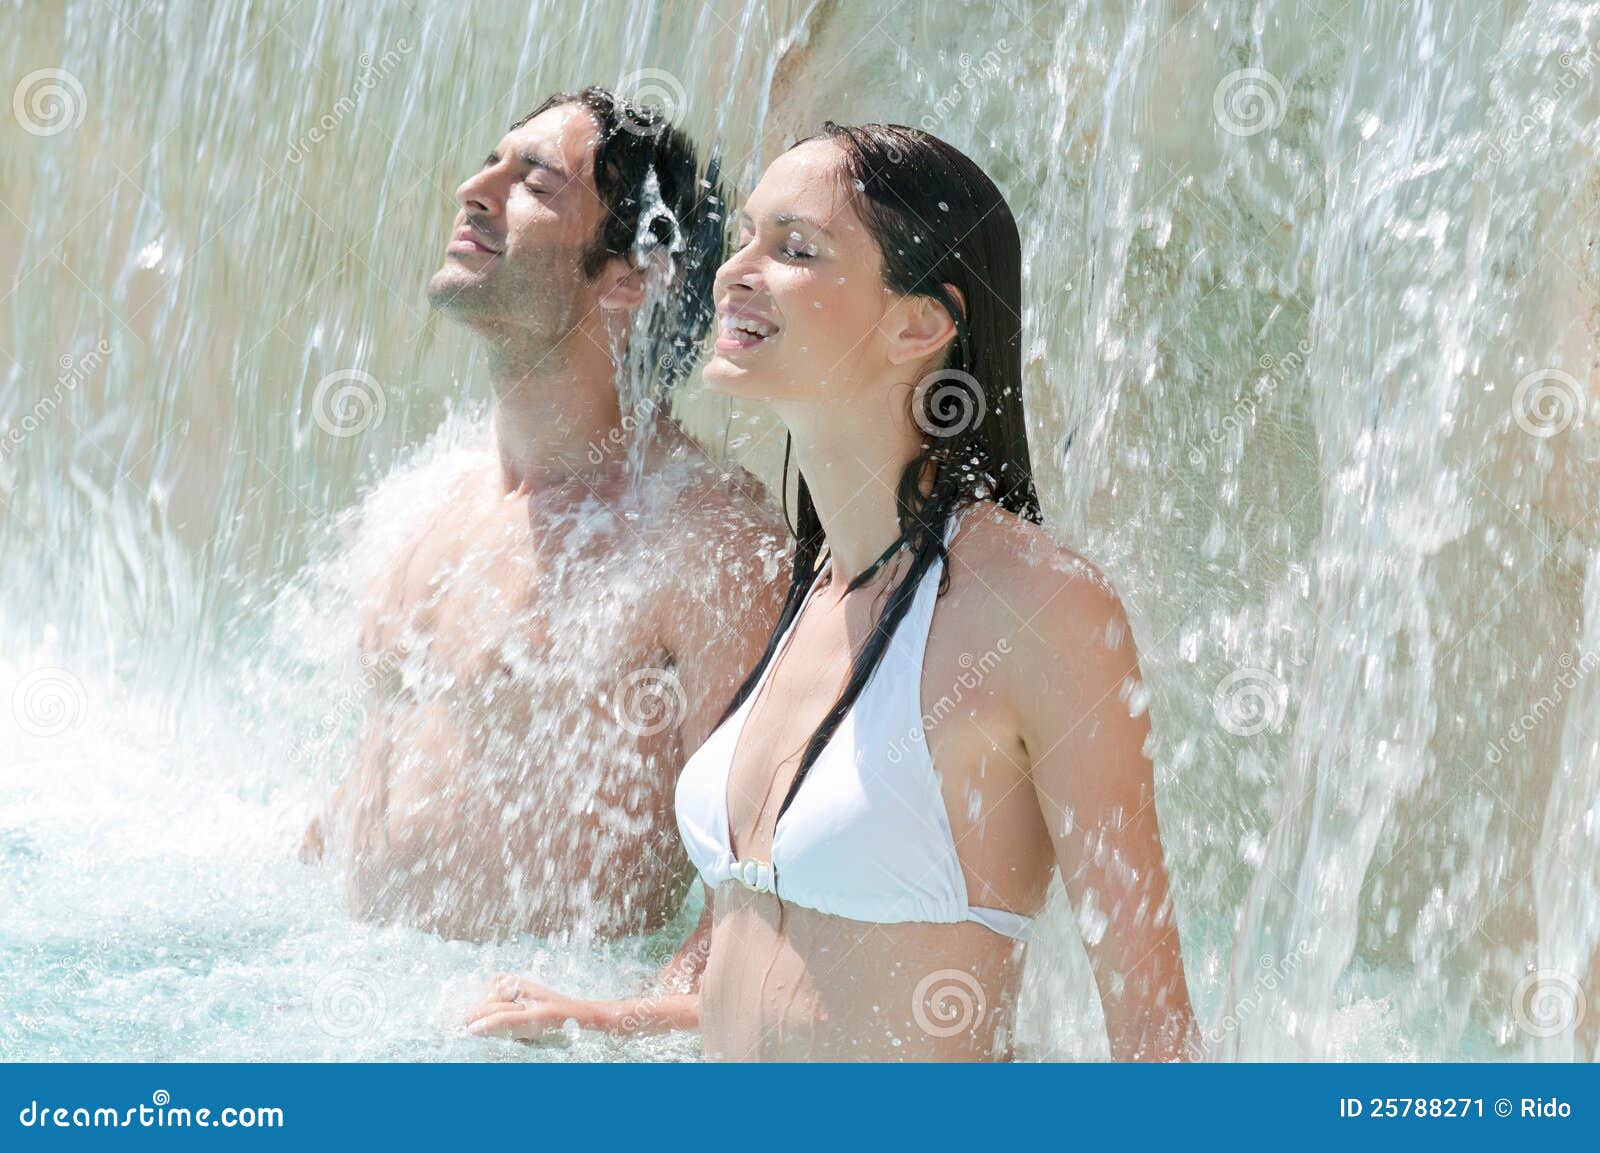 Пары купаются. Купание под водопадом. Девушка купается под водопадом. Мужчина и женщина купаются. Парень с девушкой купаются.